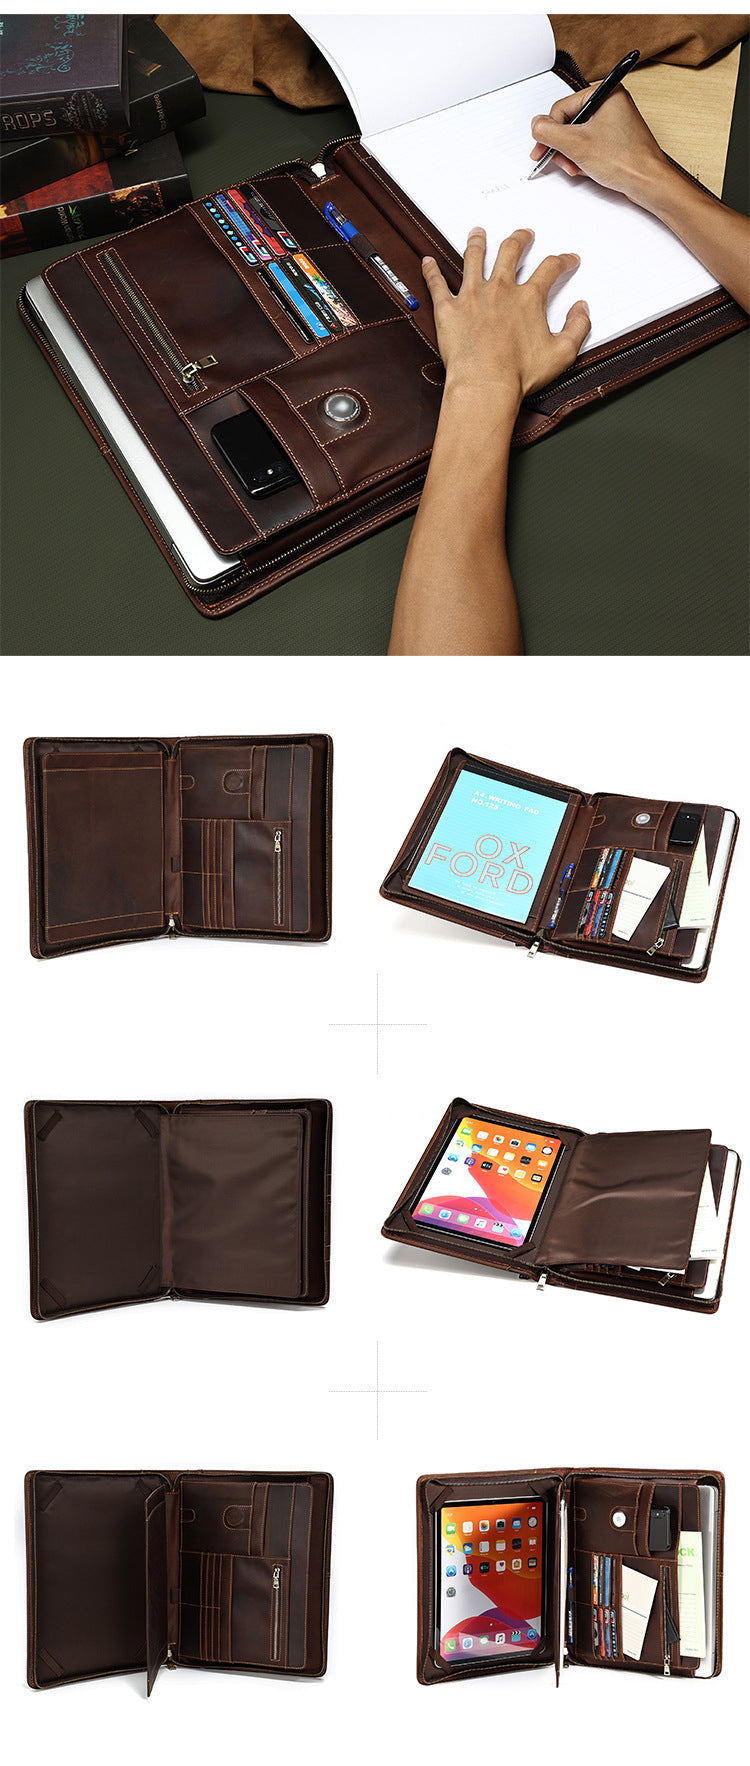 iPad Pro Leather Portfolio Case with Pen Case, Designer Zipper Organiz